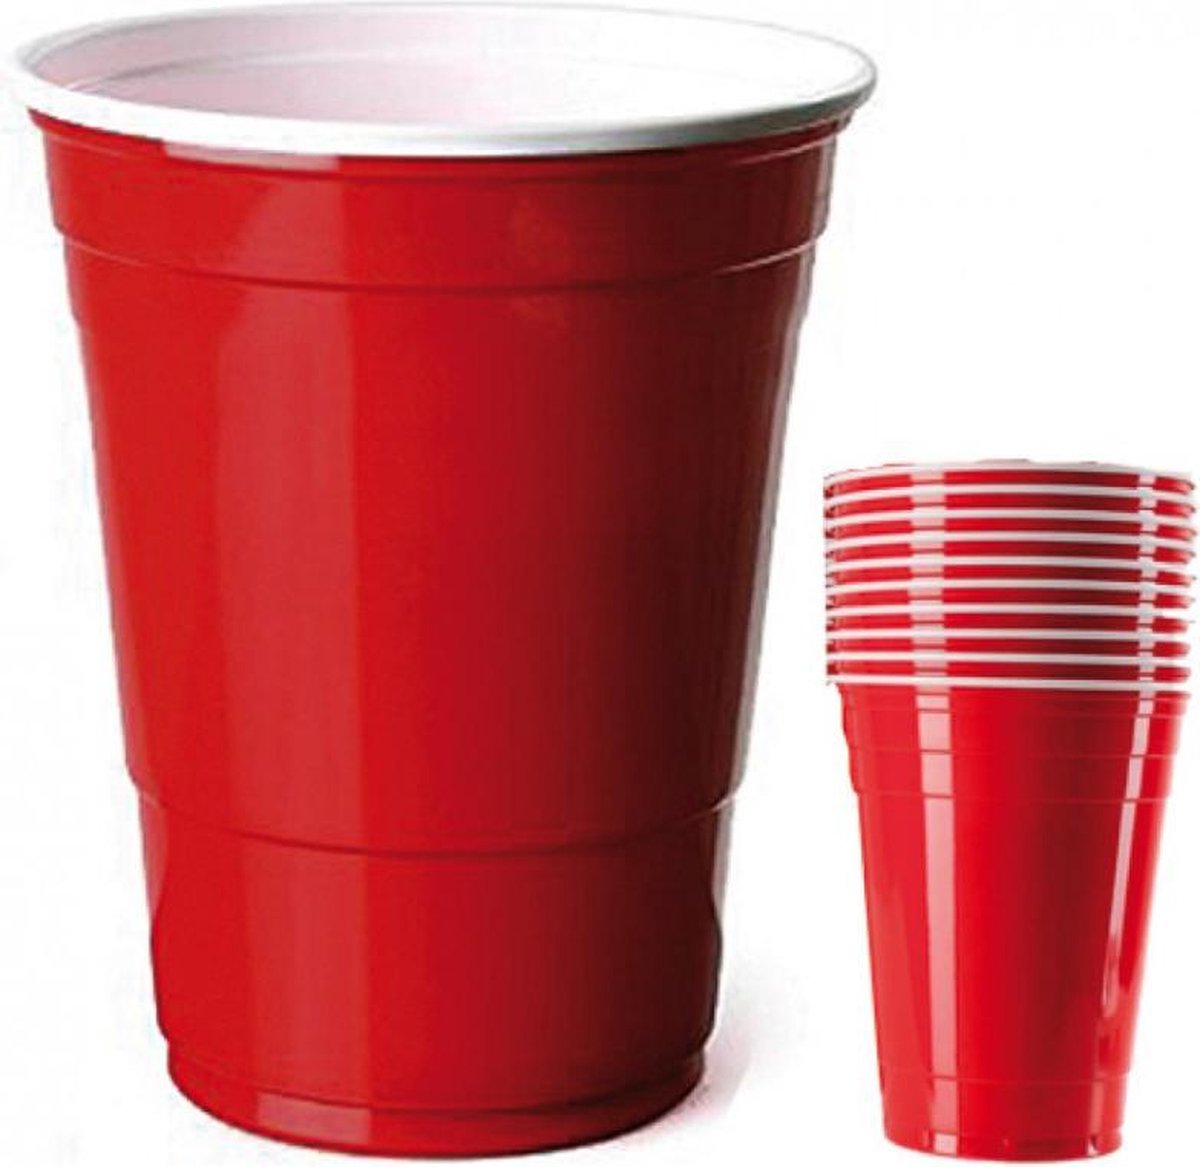 Immigratie Barry molen Red cups XXL - 10 stuks - Partybeker - Beerpong - Feest bekers - Rode bekers  - 470 ml | bol.com